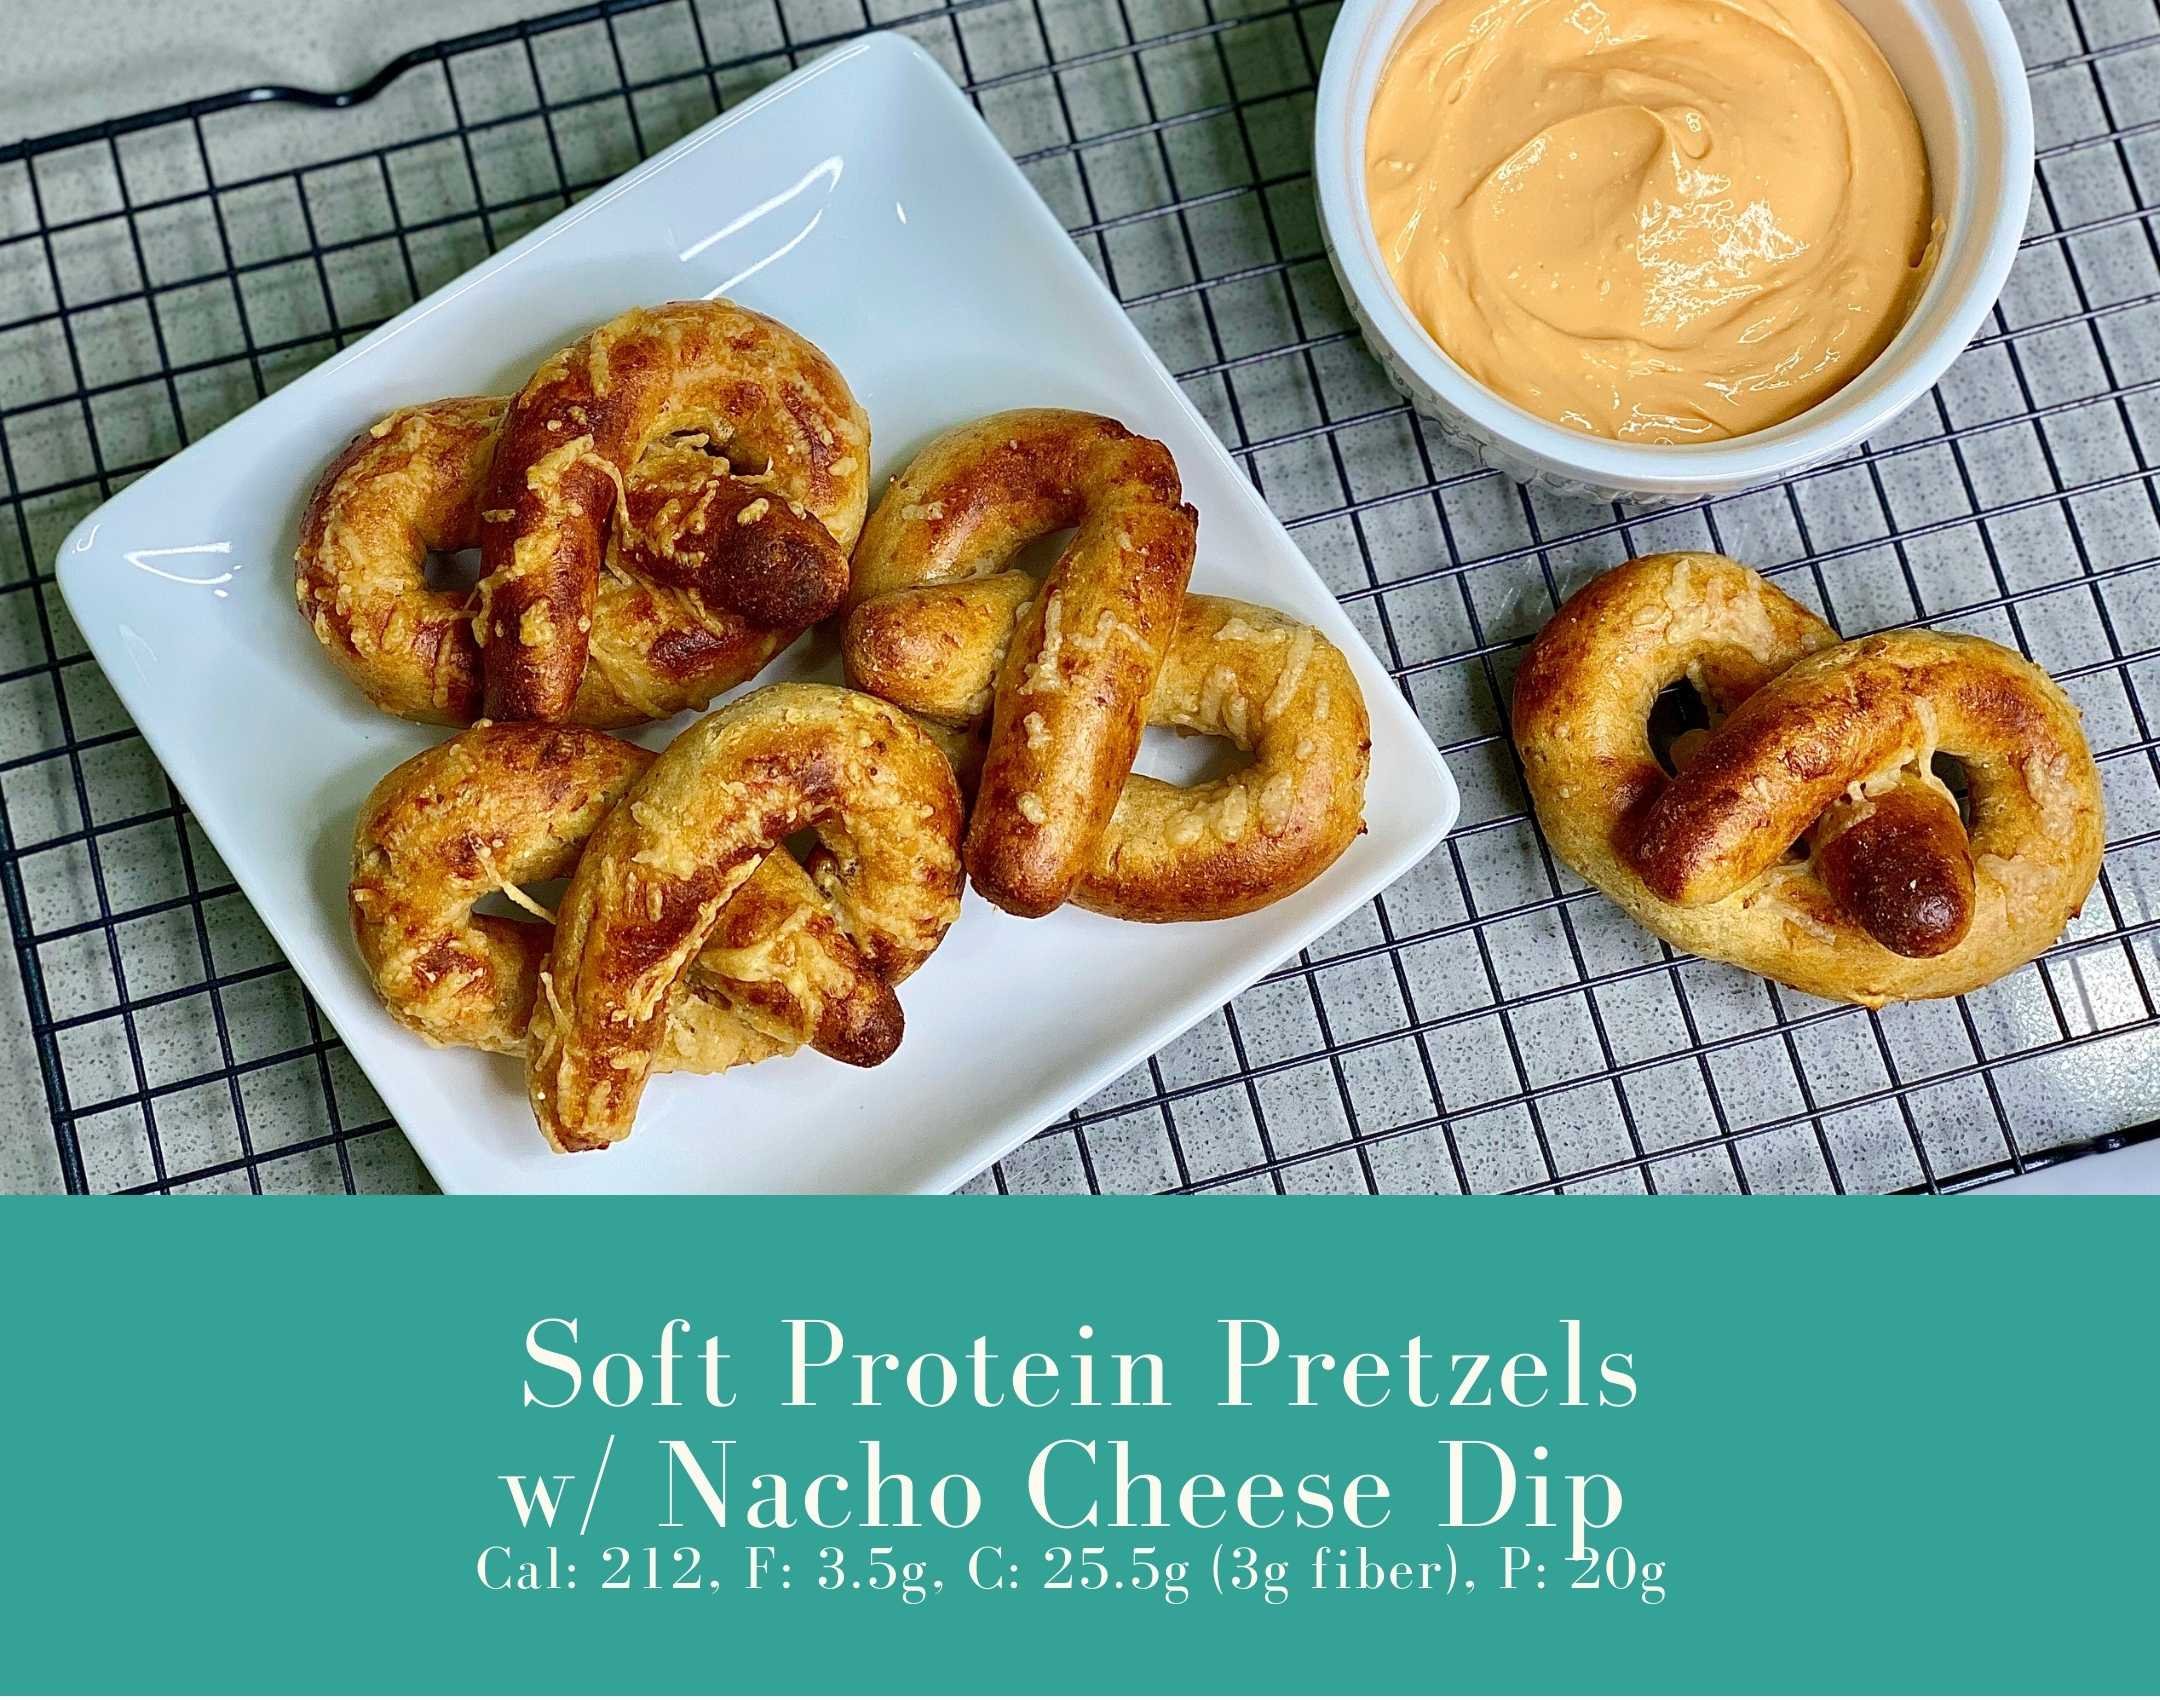 Soft Protein Pretzels with Nacho Cheese Dip.jpg